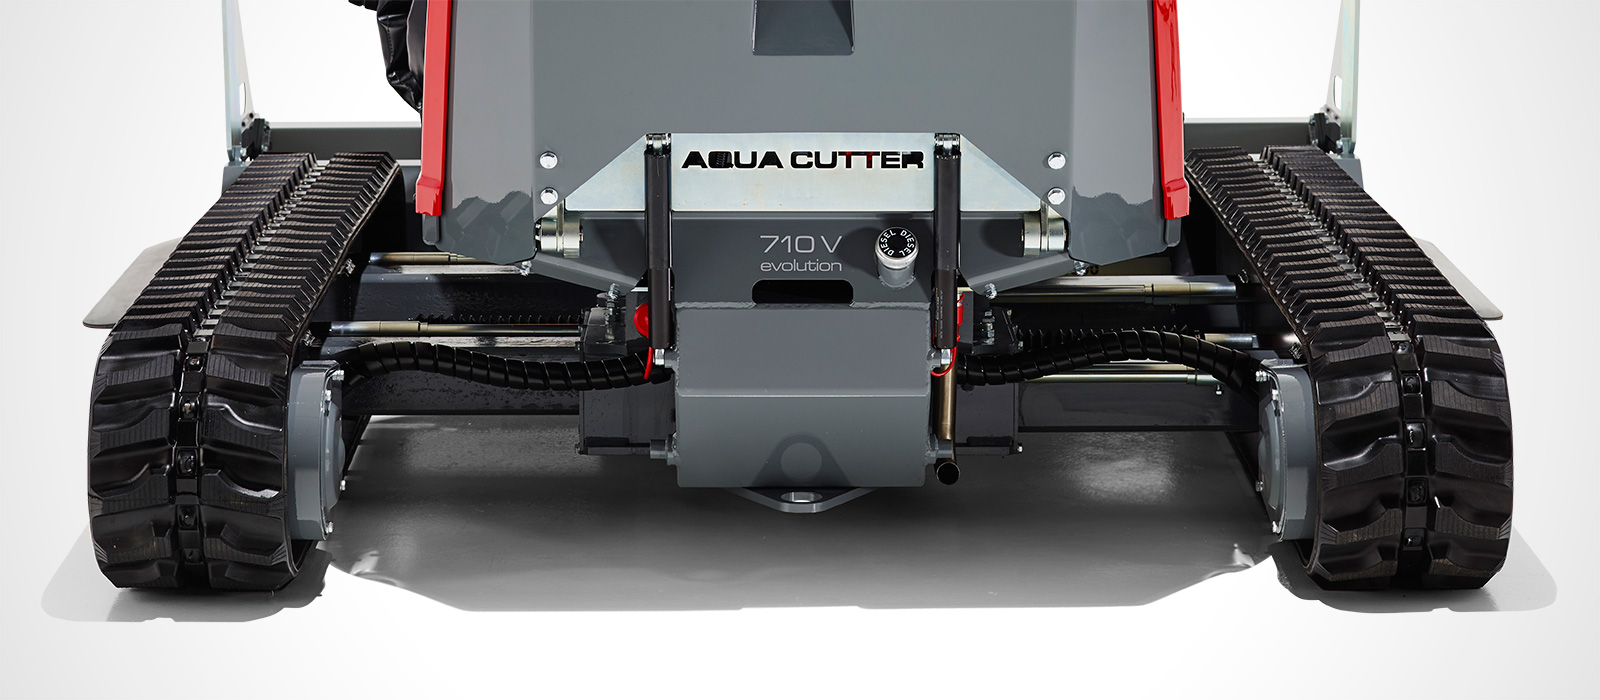 Aqua cutter 710V XL